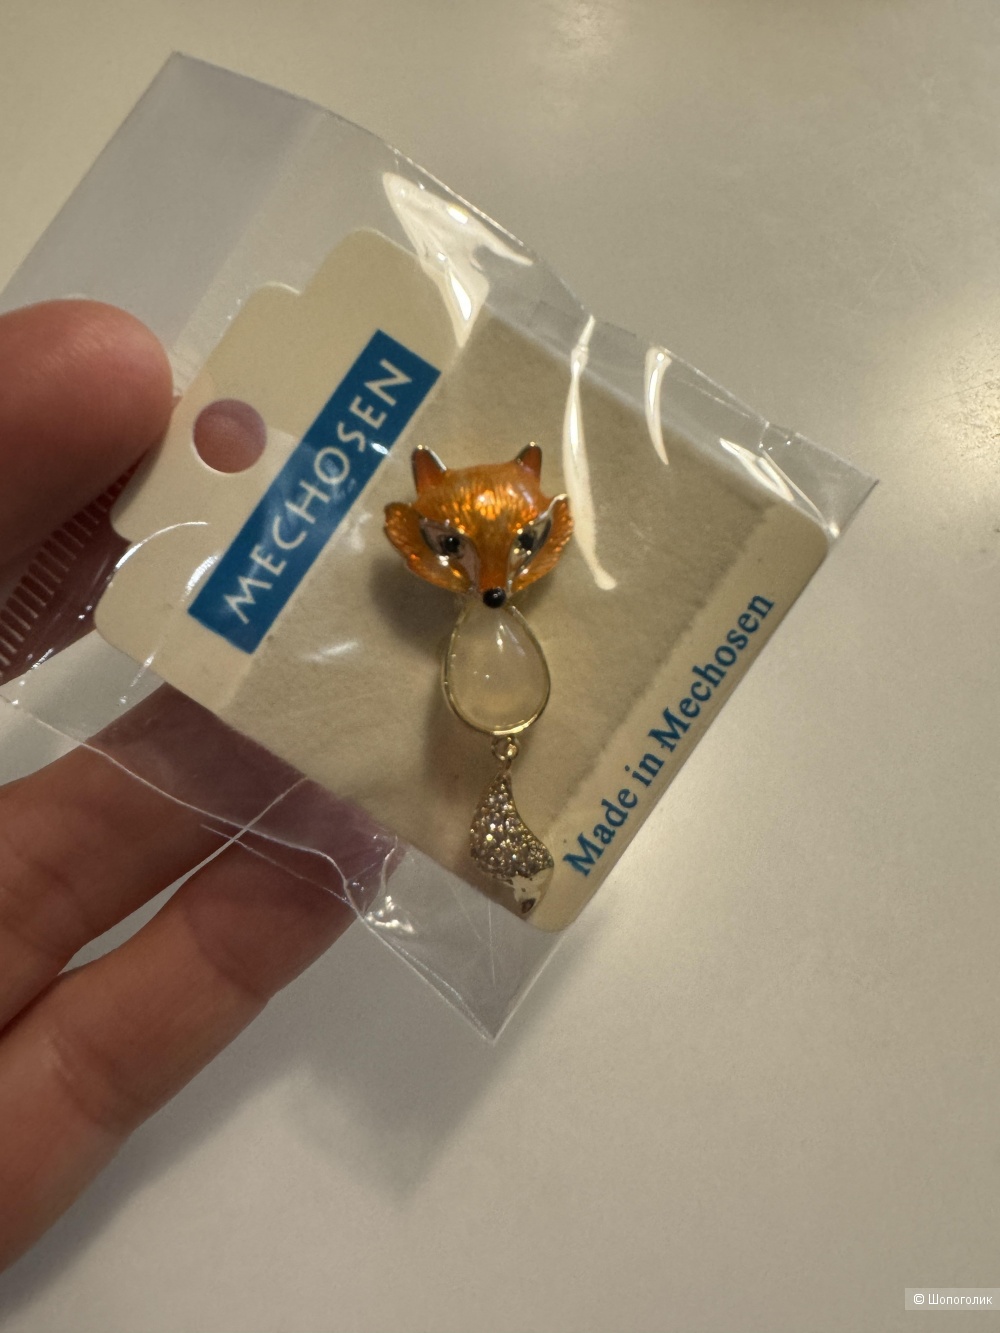 Брошь лисичка Fox, one size